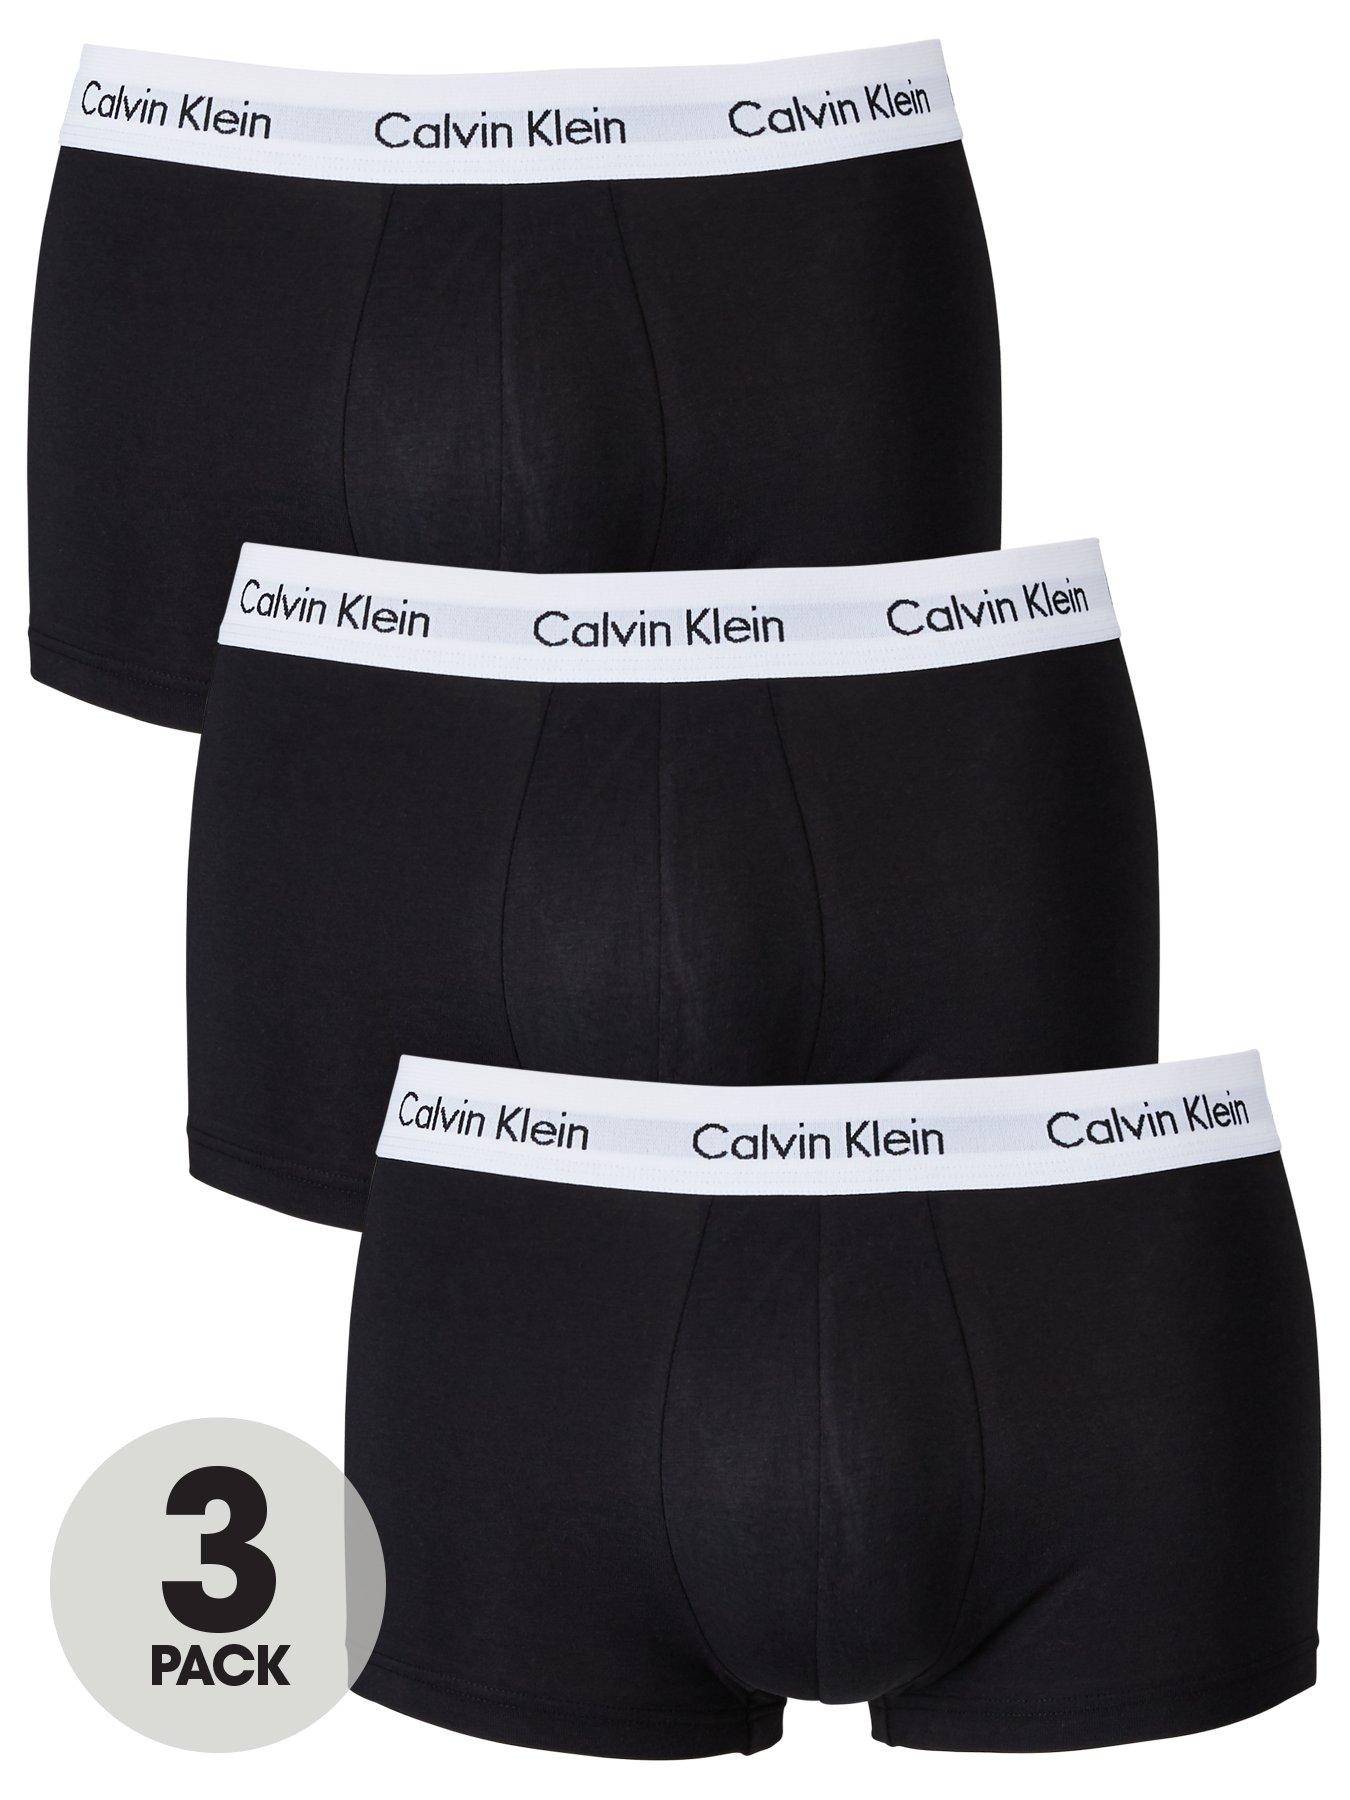 CALVIN KLEIN UNDERWEAR Seven-Pack Stretch-Cotton Boxer Briefs for Men